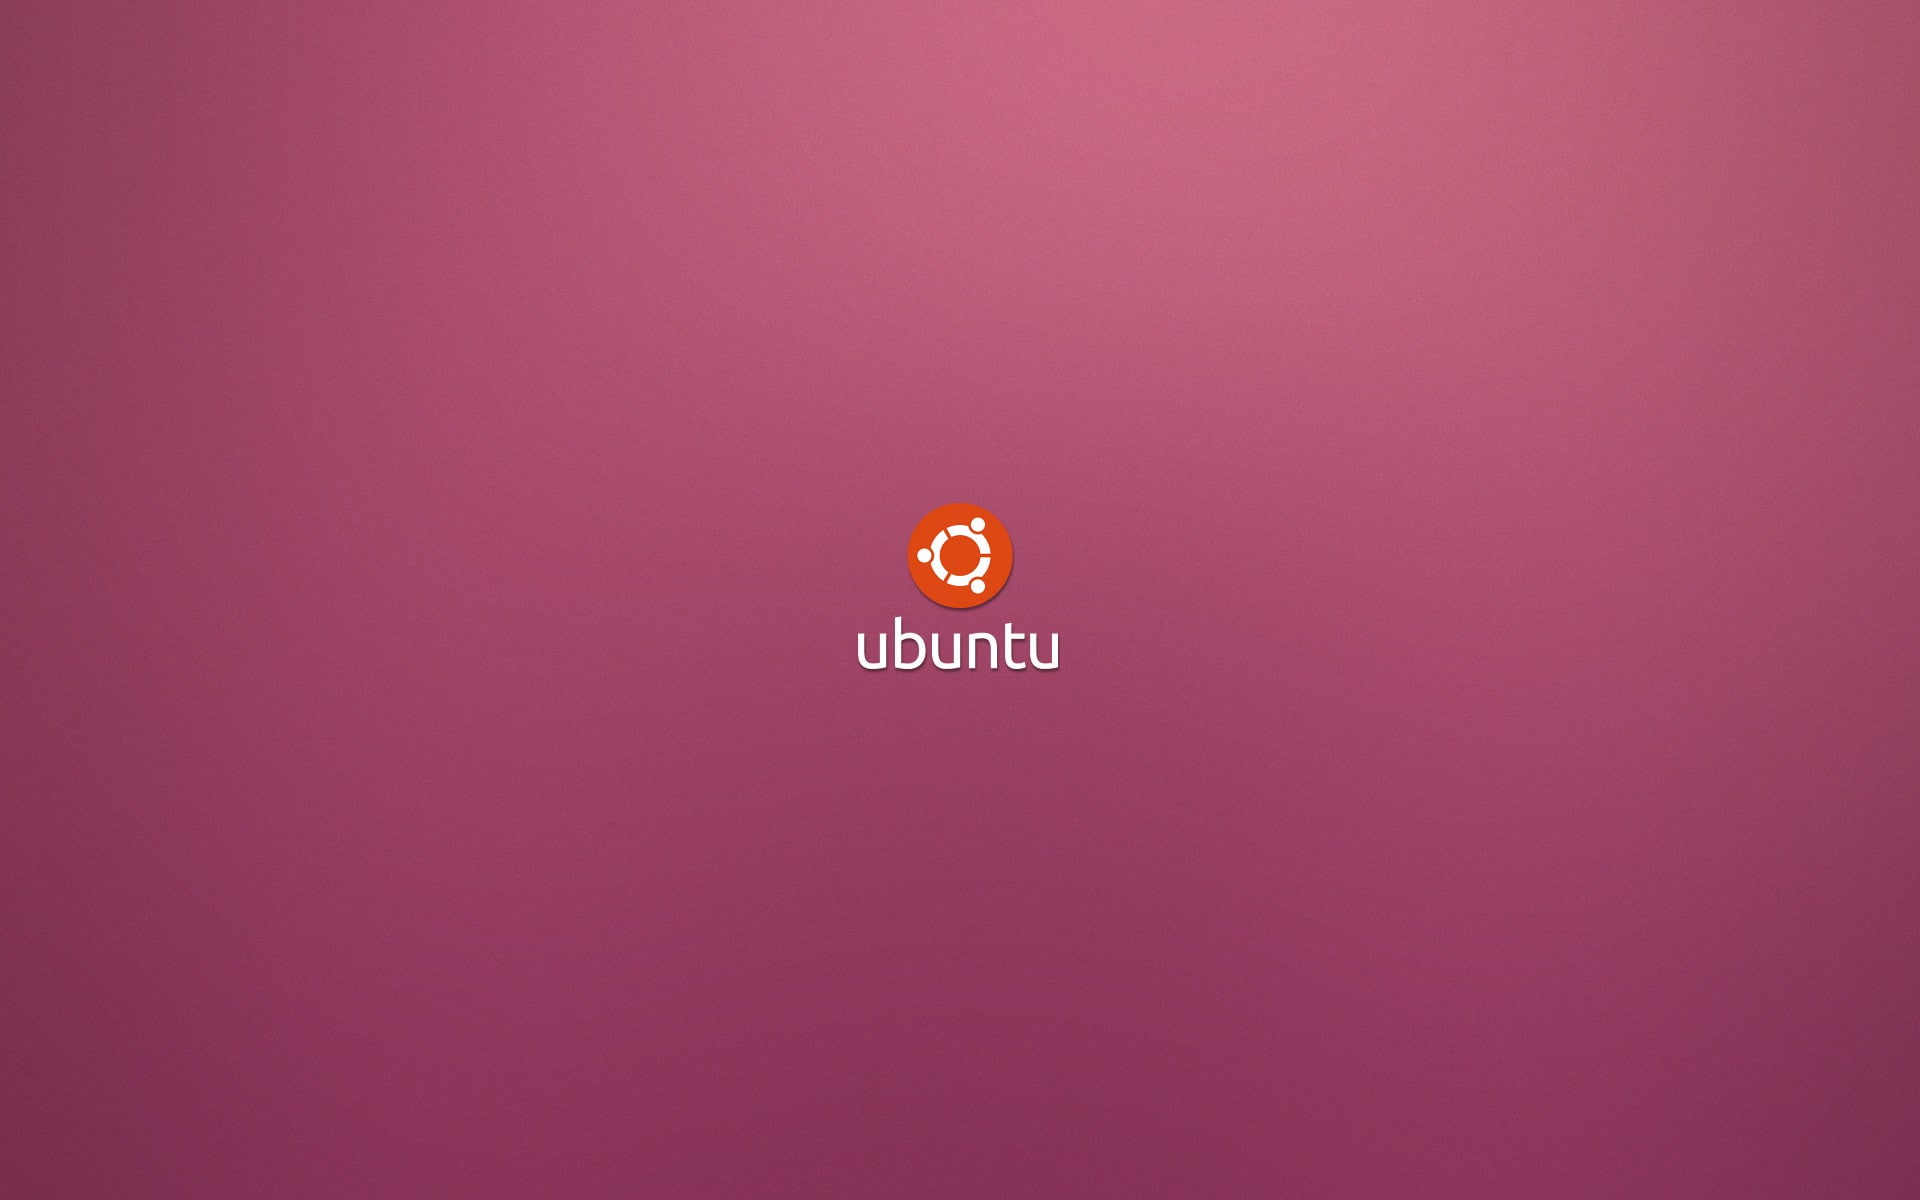 linux, logos, minimalistic, operating, systems, ubuntu